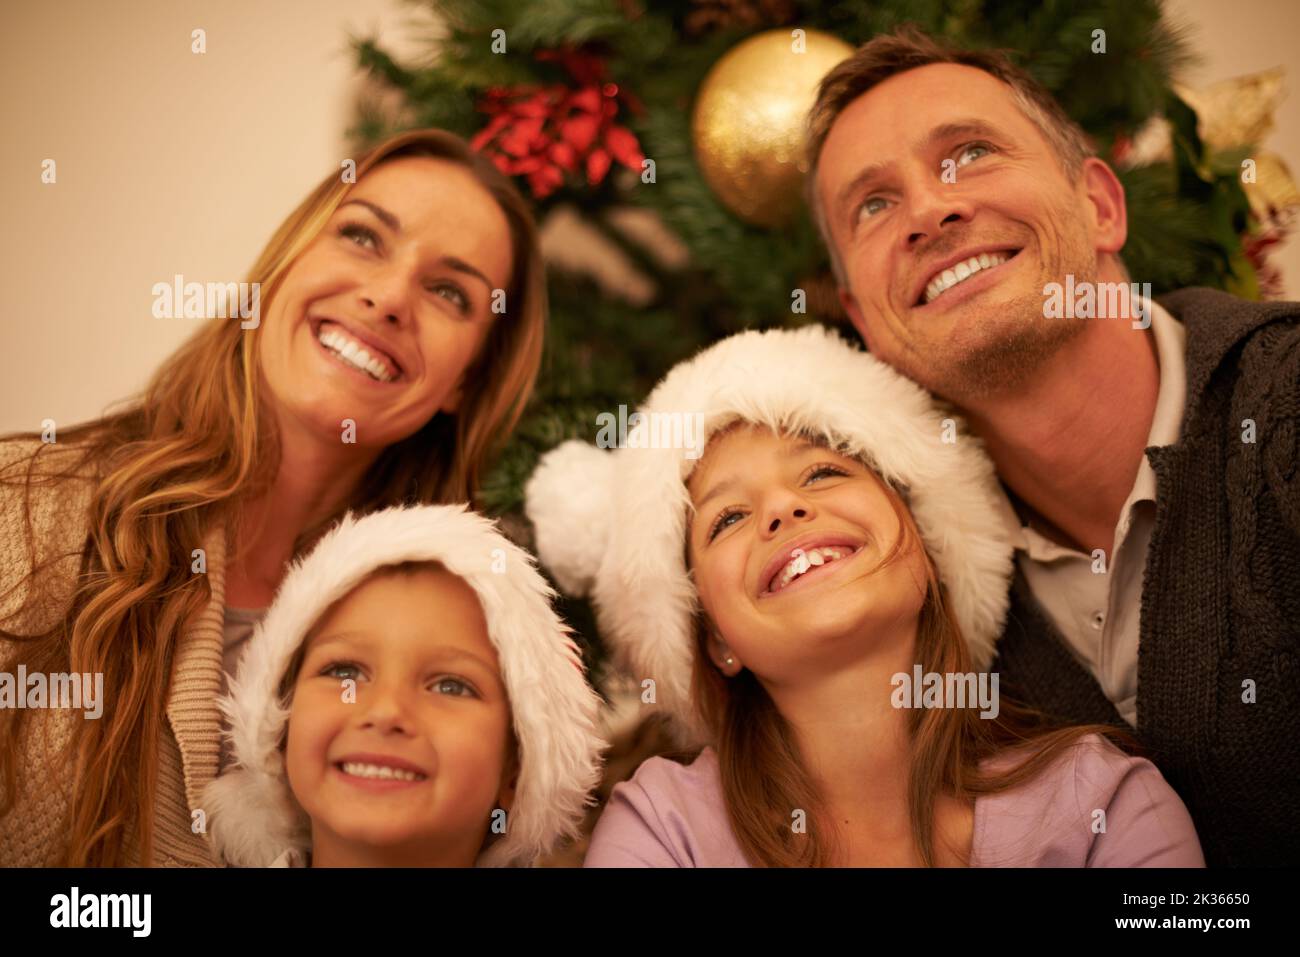 Gefüllt mit festlichen Tagträumen. Eine glückliche junge Familie am Weihnachtstag. Stockfoto